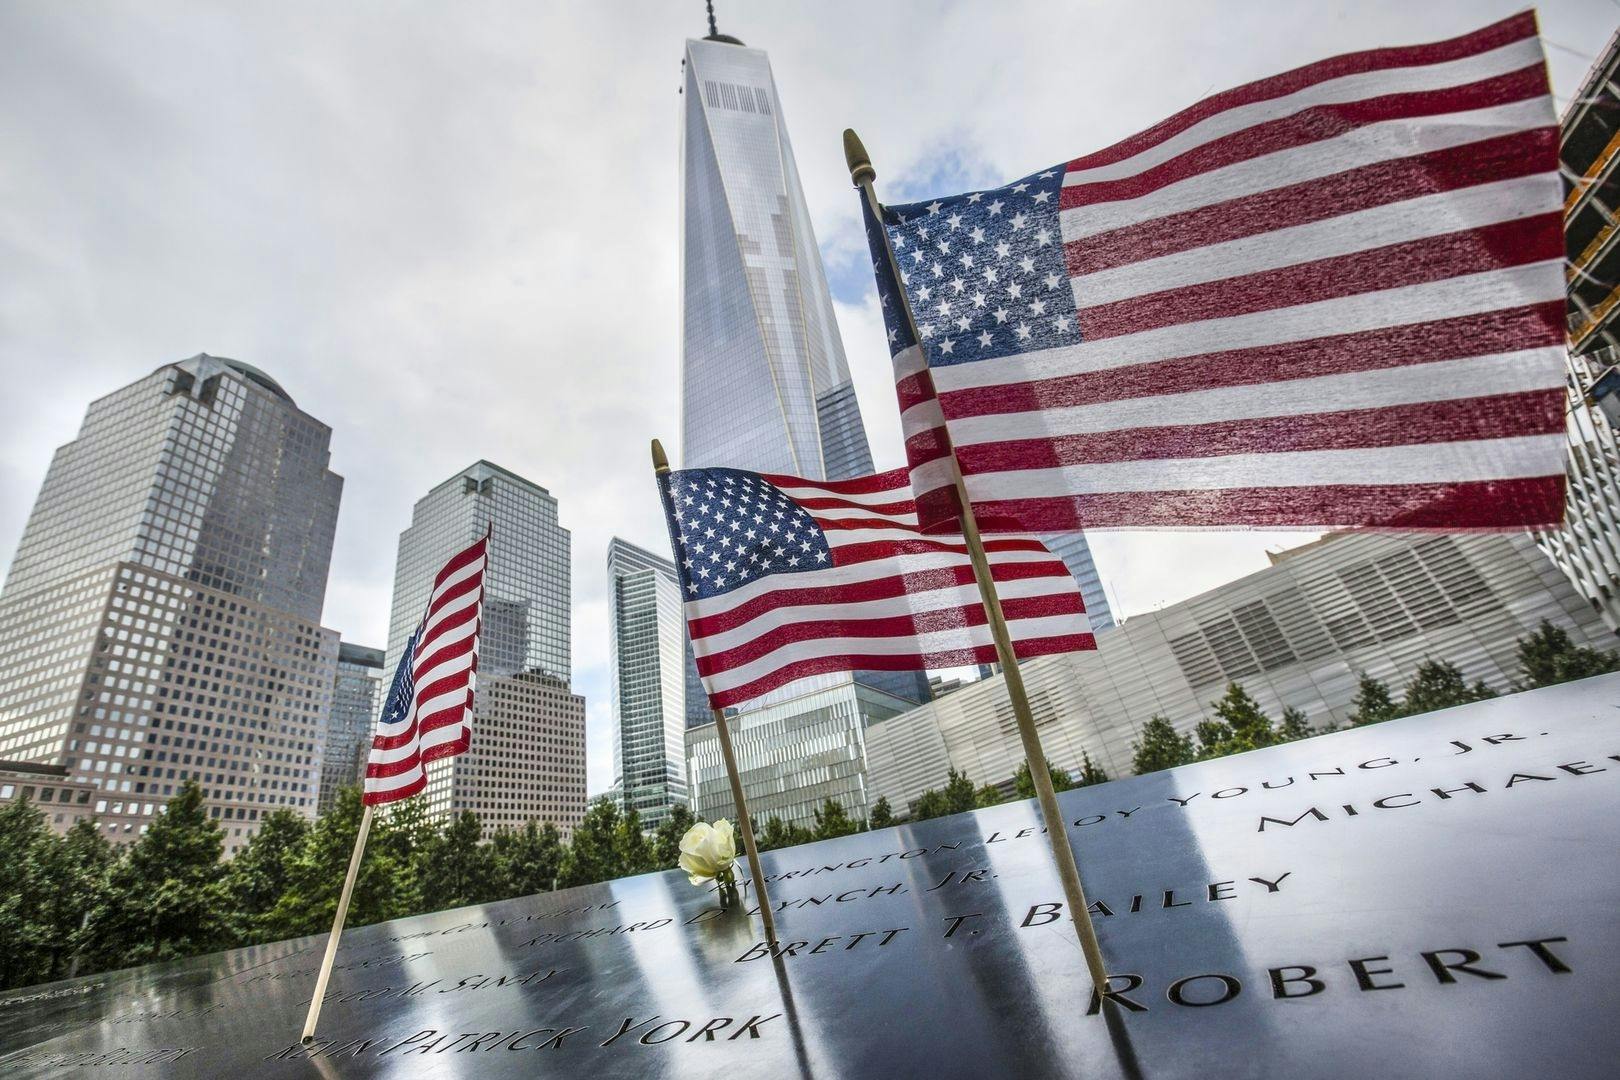 Entrada sin colas al monumento conmemorativo del 11 de septiembre y visita autoguiada